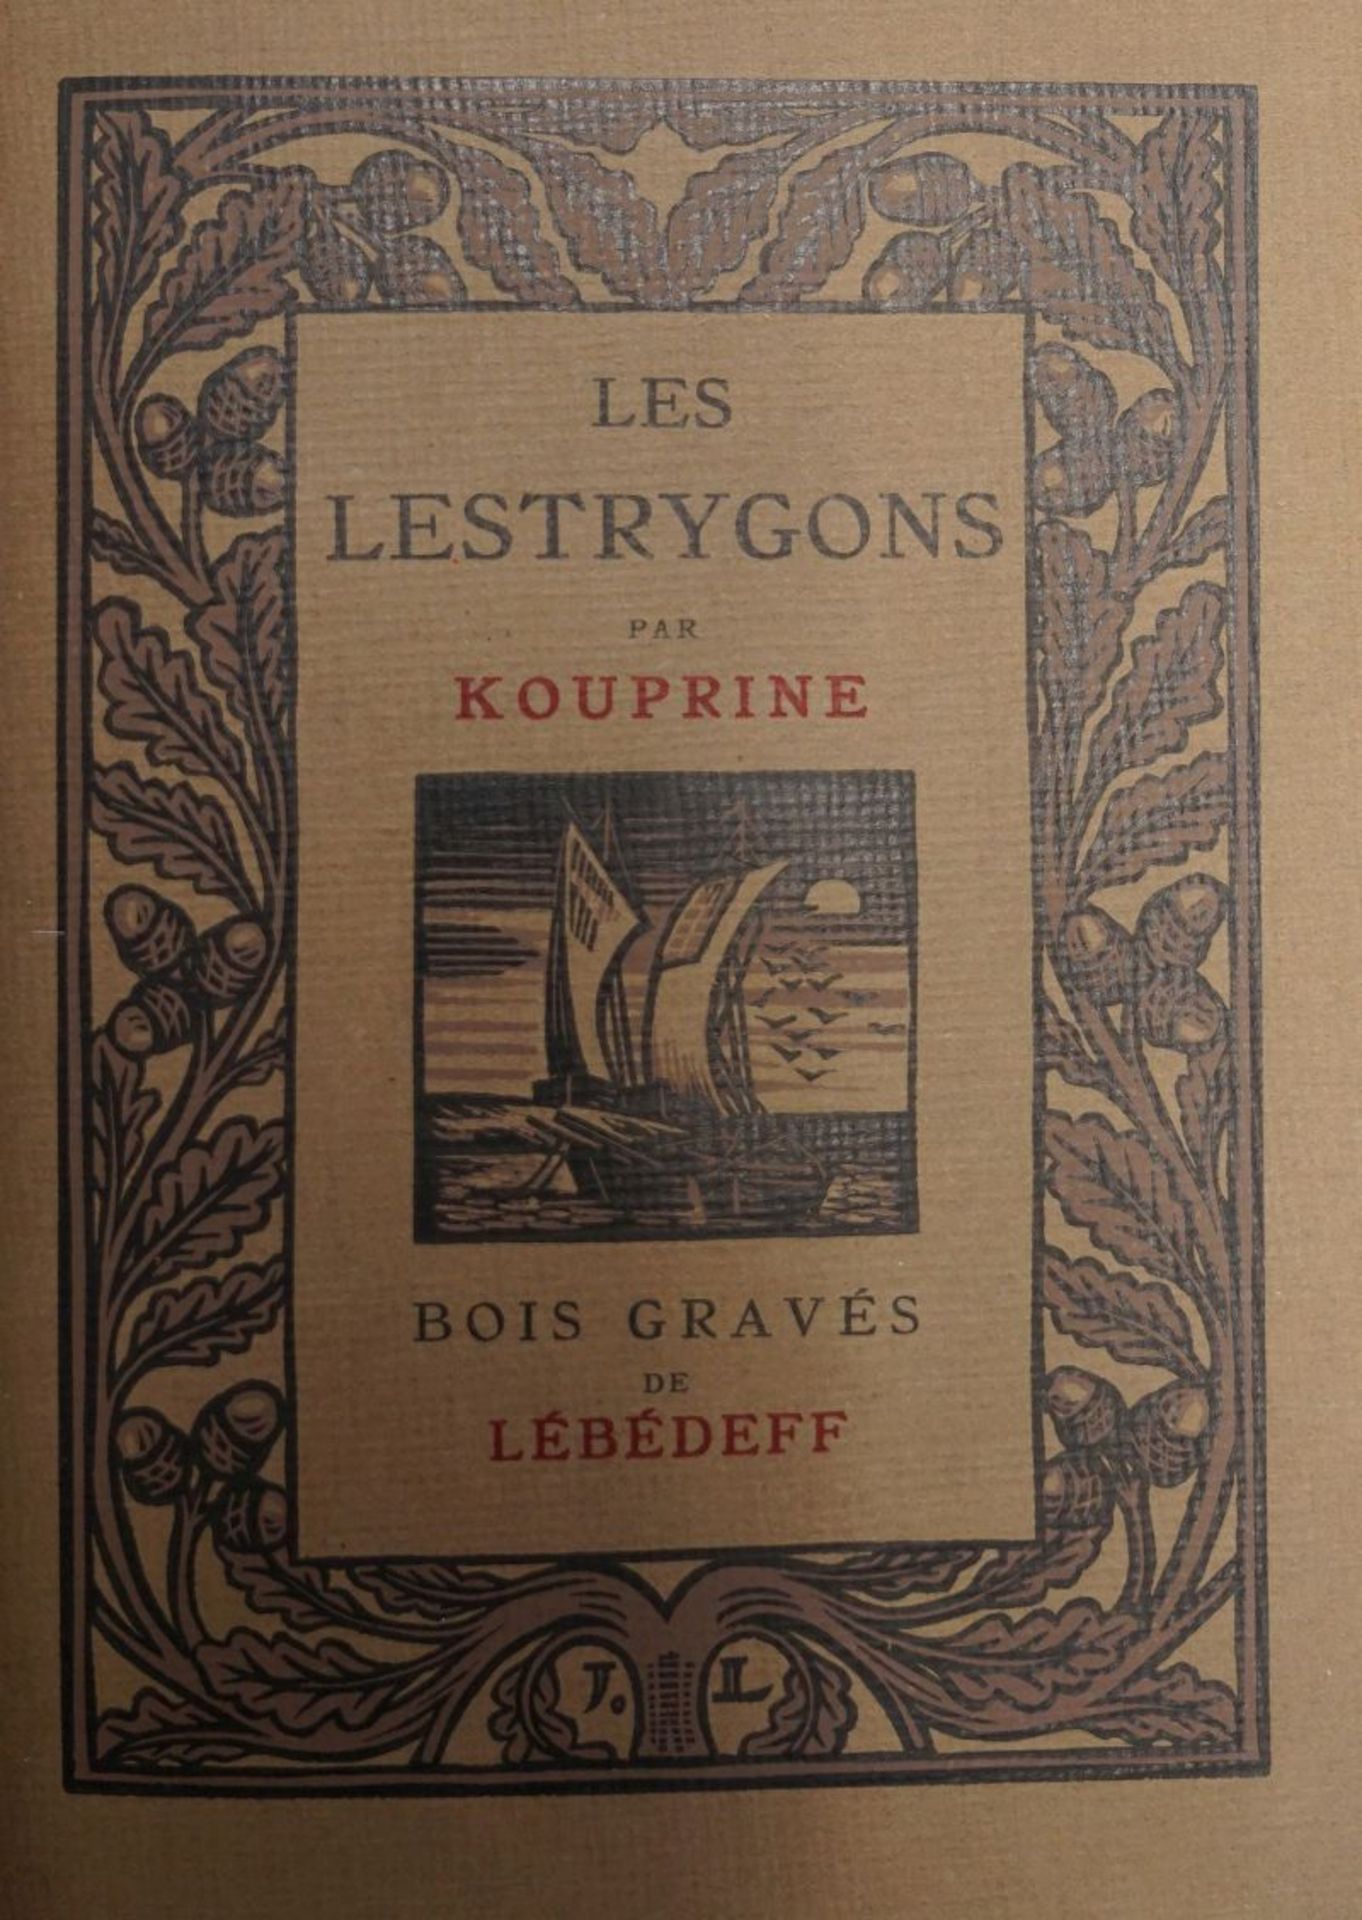 Kouprine, Alexandre und Lébédeff, J...: Les Lestrygons